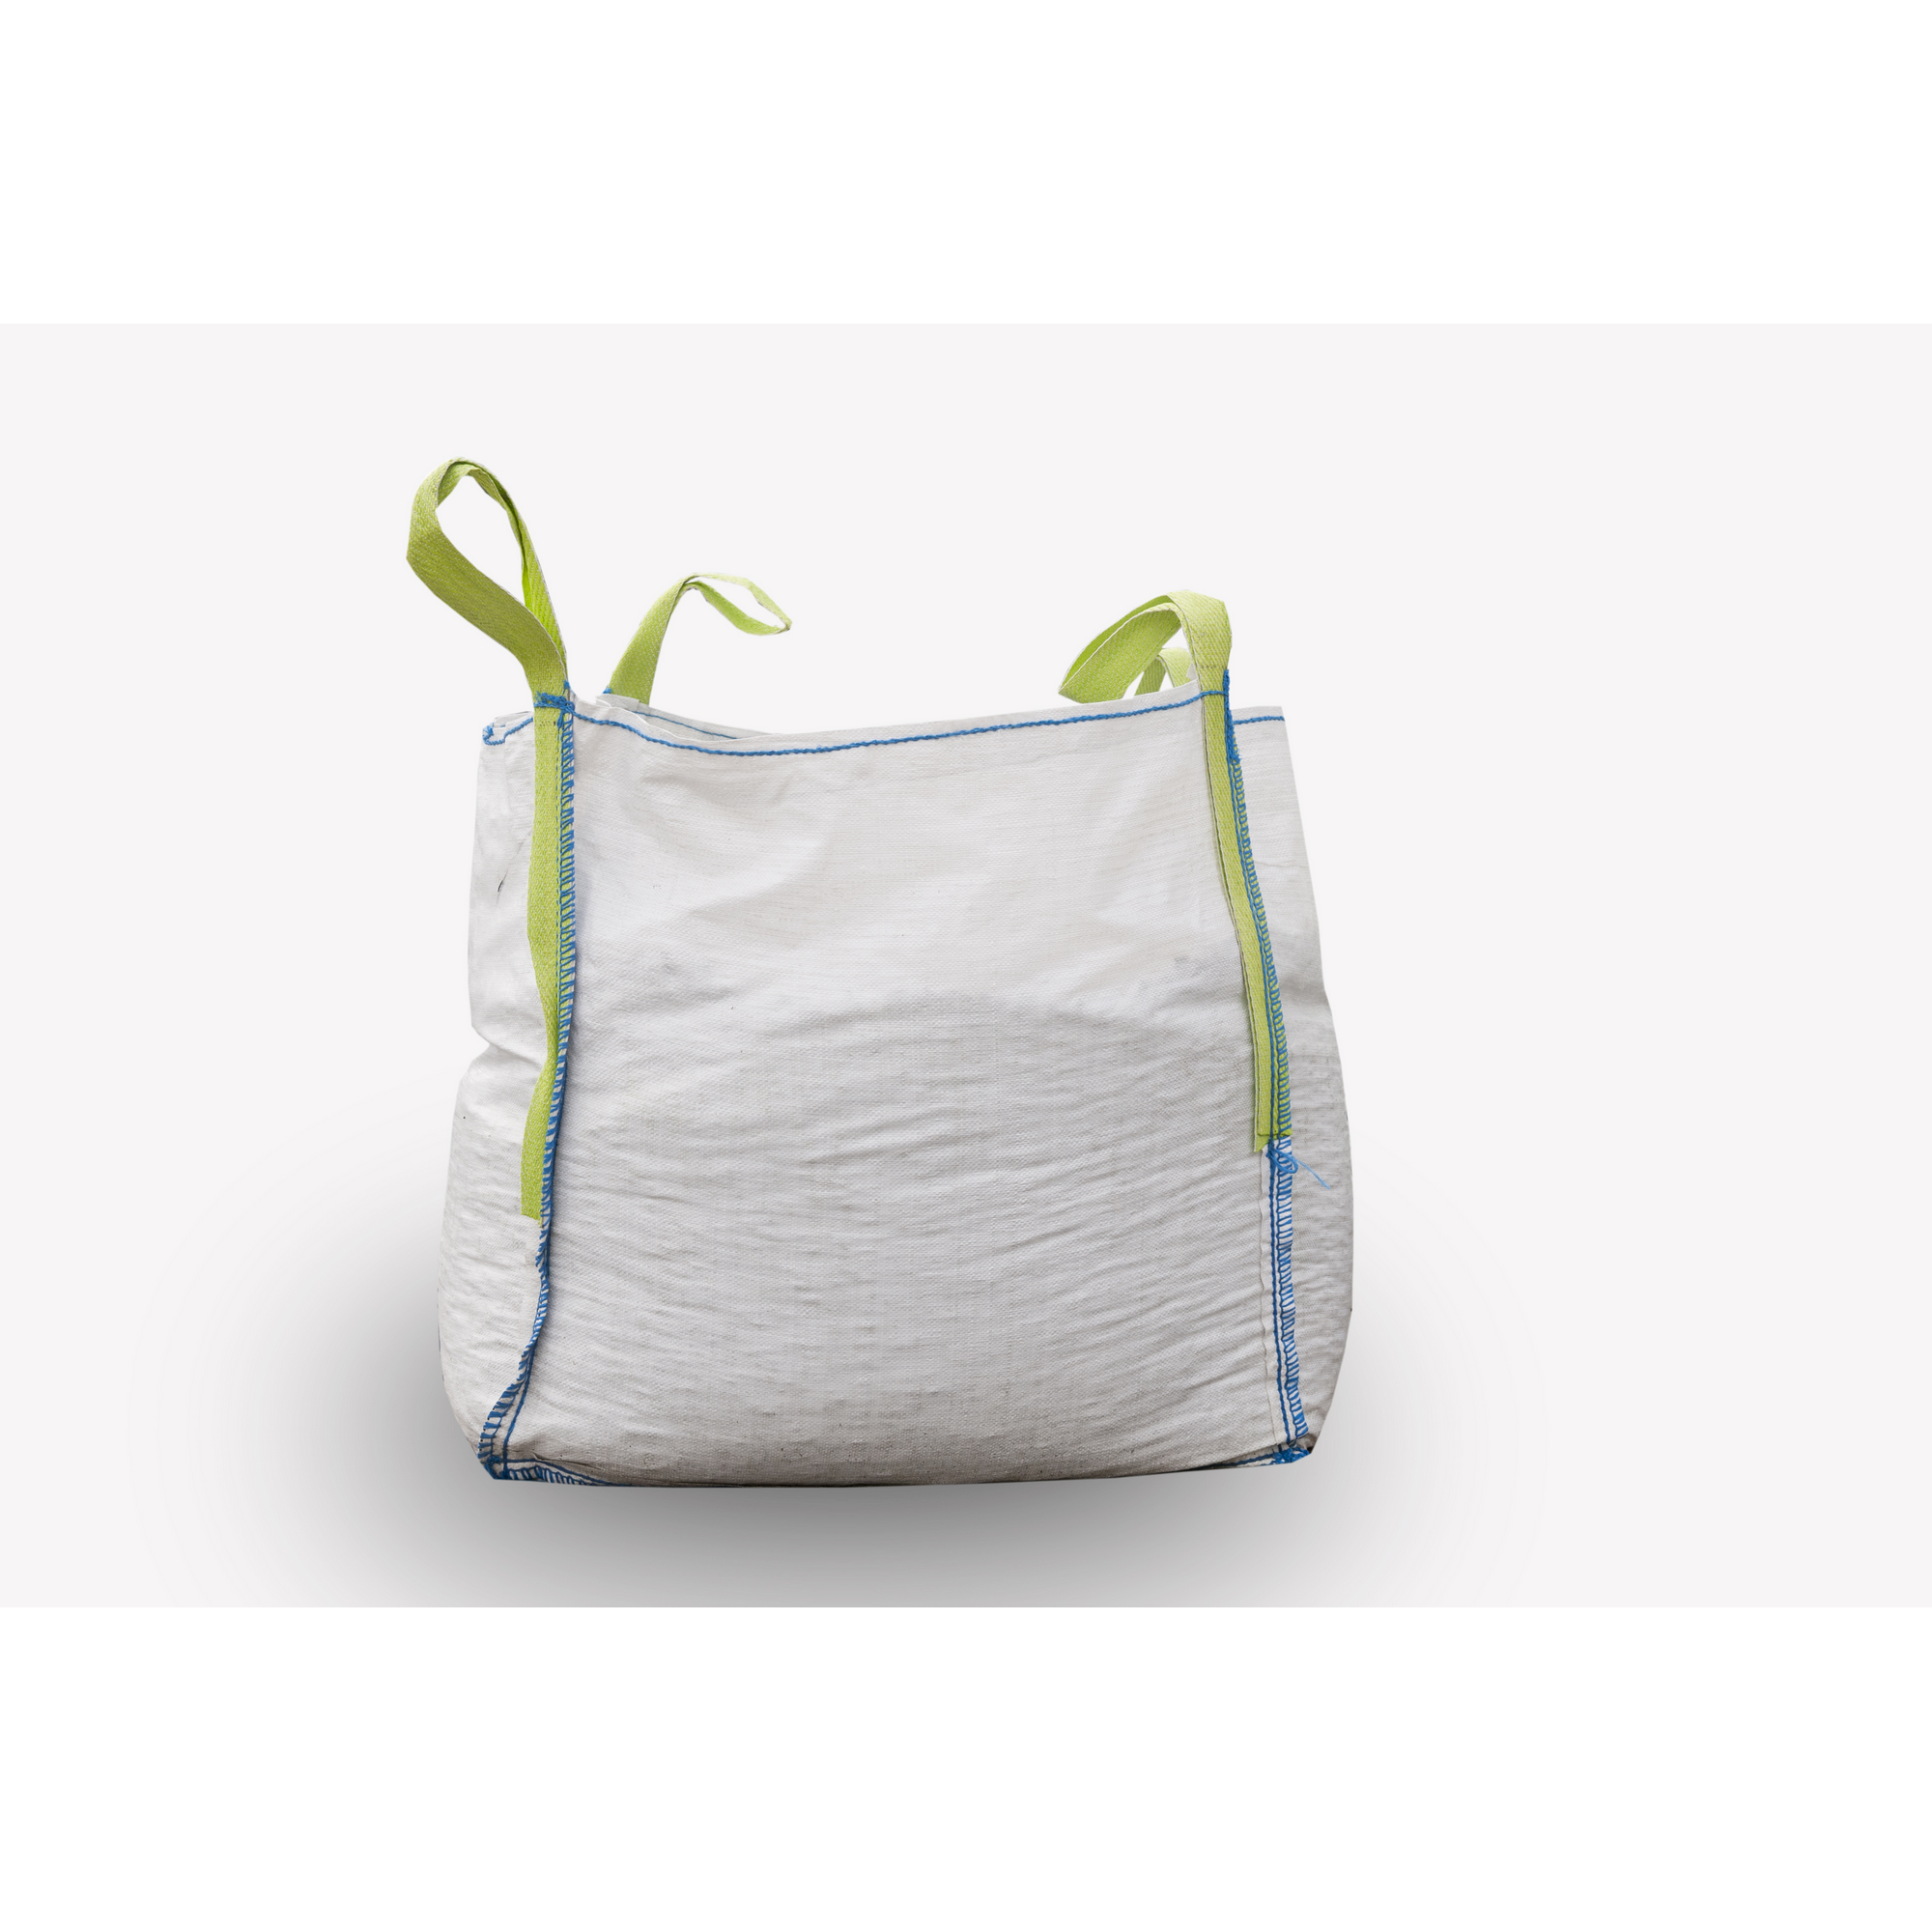 Zierkies 'Anatolia Verde' grün/weiß 40/100 mm 250 kg im Big Bag + product picture